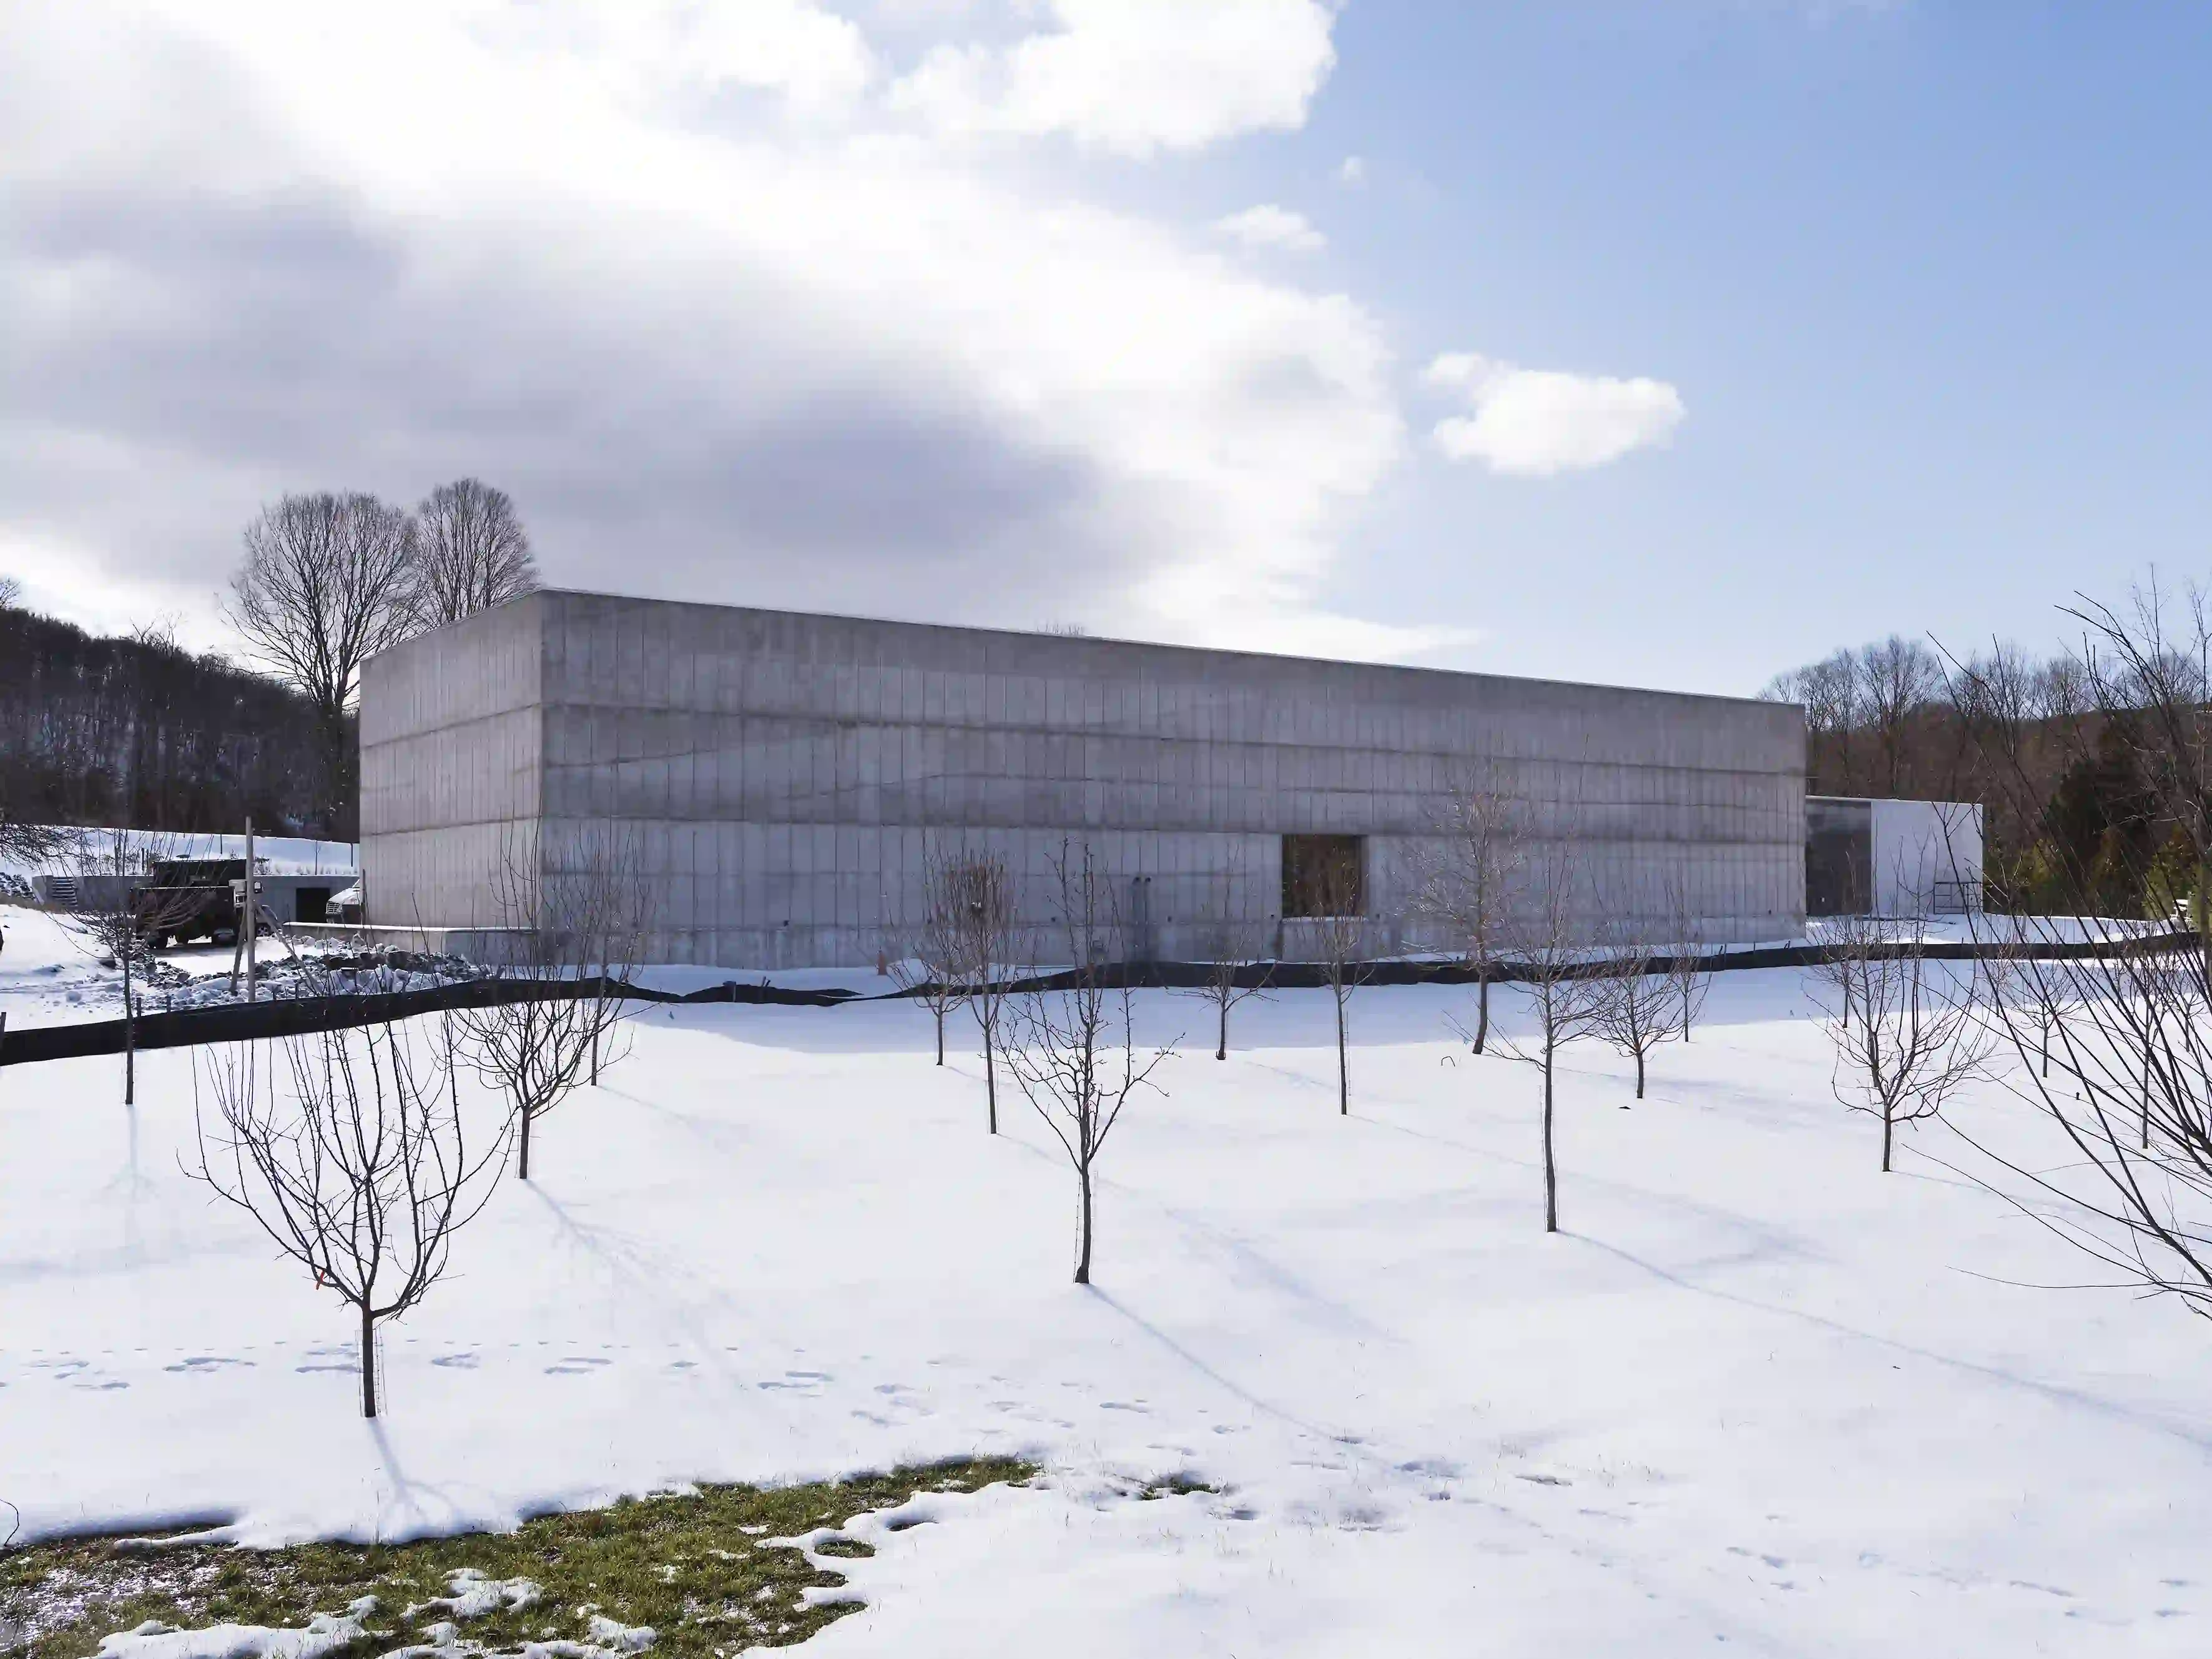 Fondato dai collezionisti Nancy Olnick e Giorgio Spanu, il centro è dedicato all'arte
italiana del dopoguerra e contemporanea